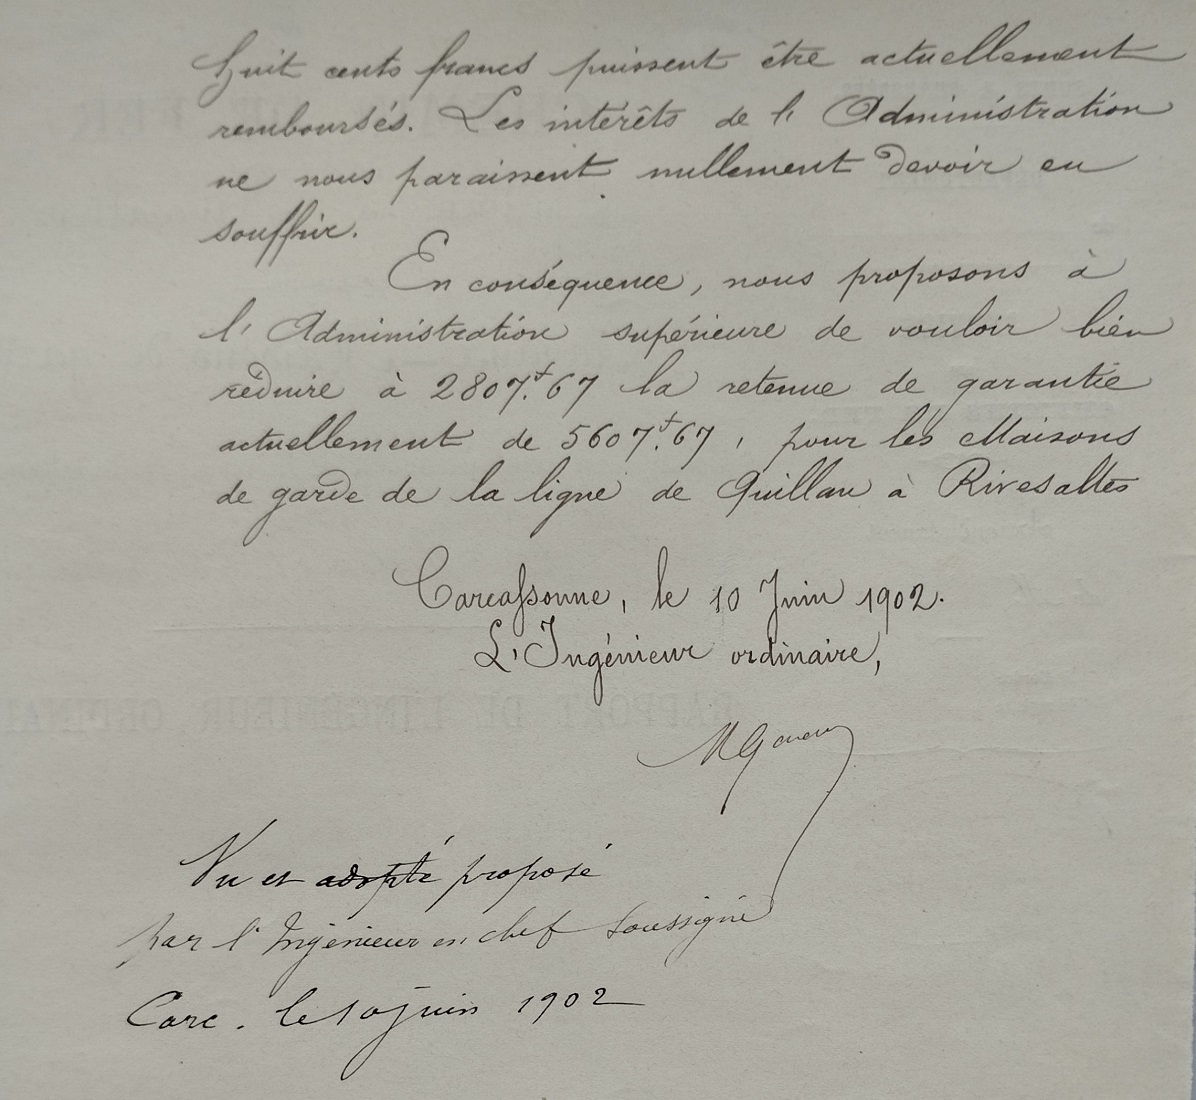 10 juin 1902 - Demande de remboursement de la moitié de la retenue de garantie par Alphonse Merlin - 2